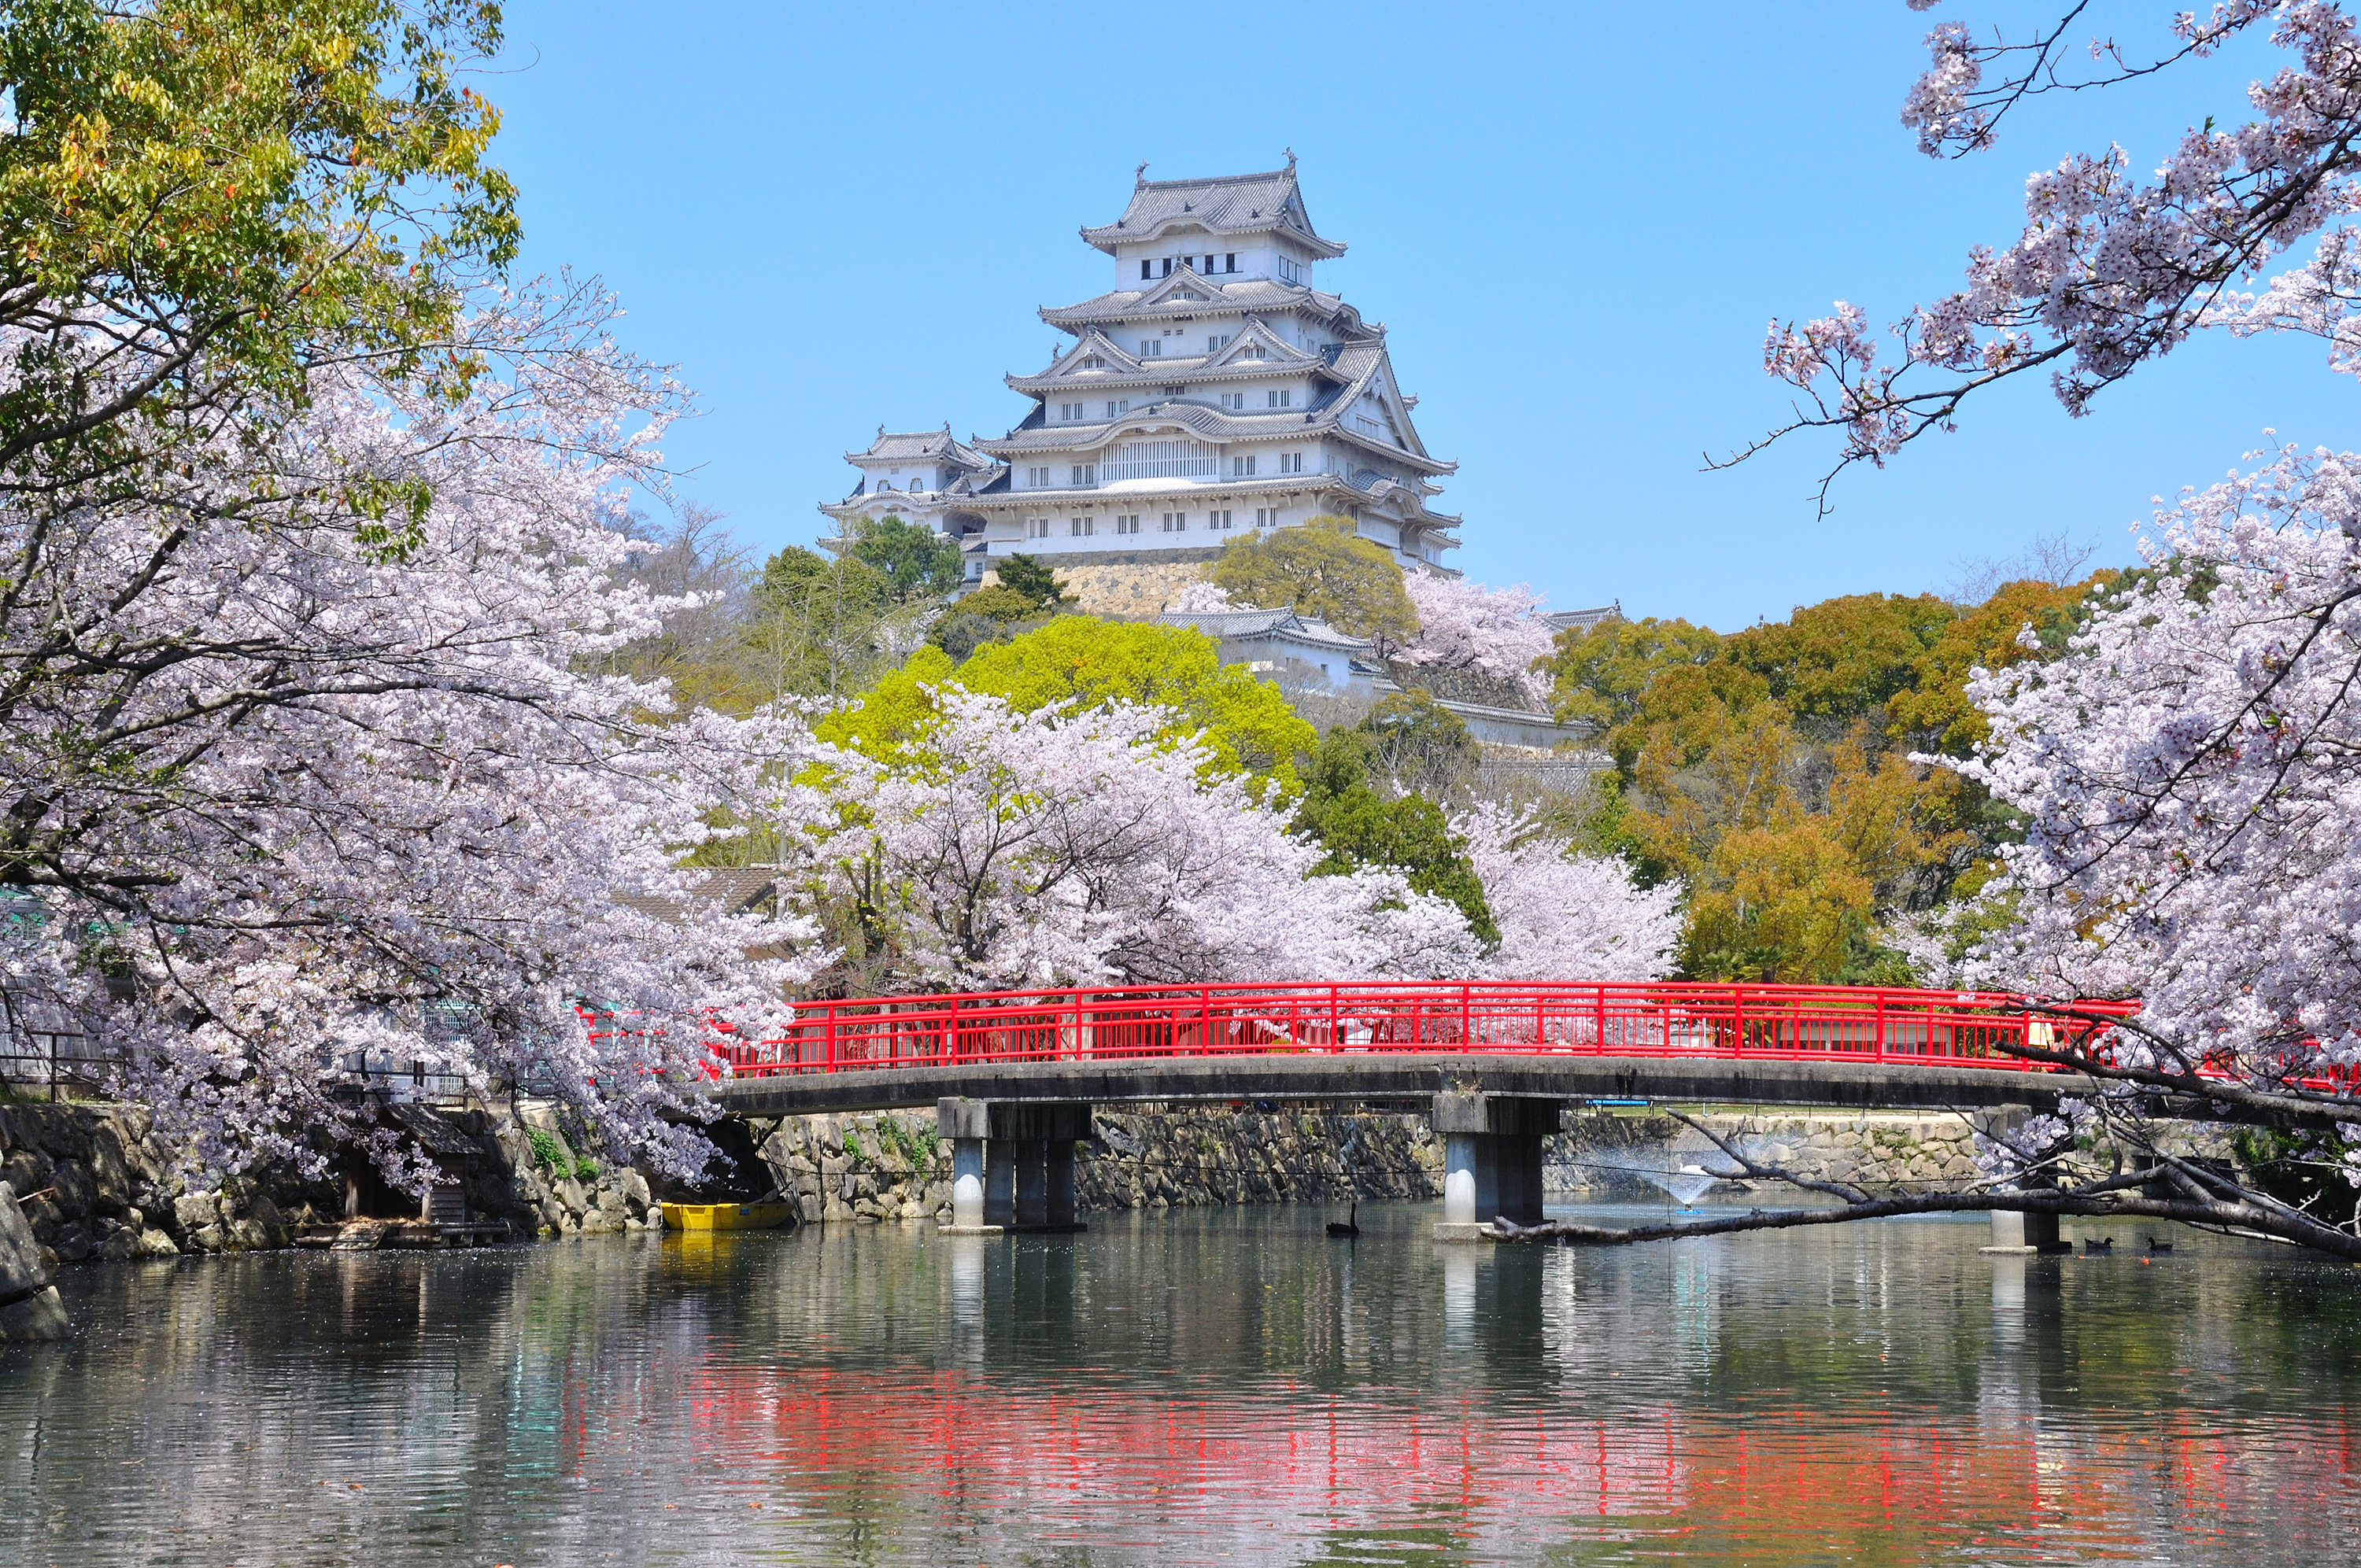 姫路市を楽しむにはここ 姫路 の観光スポットおすすめランキング Tabit Life